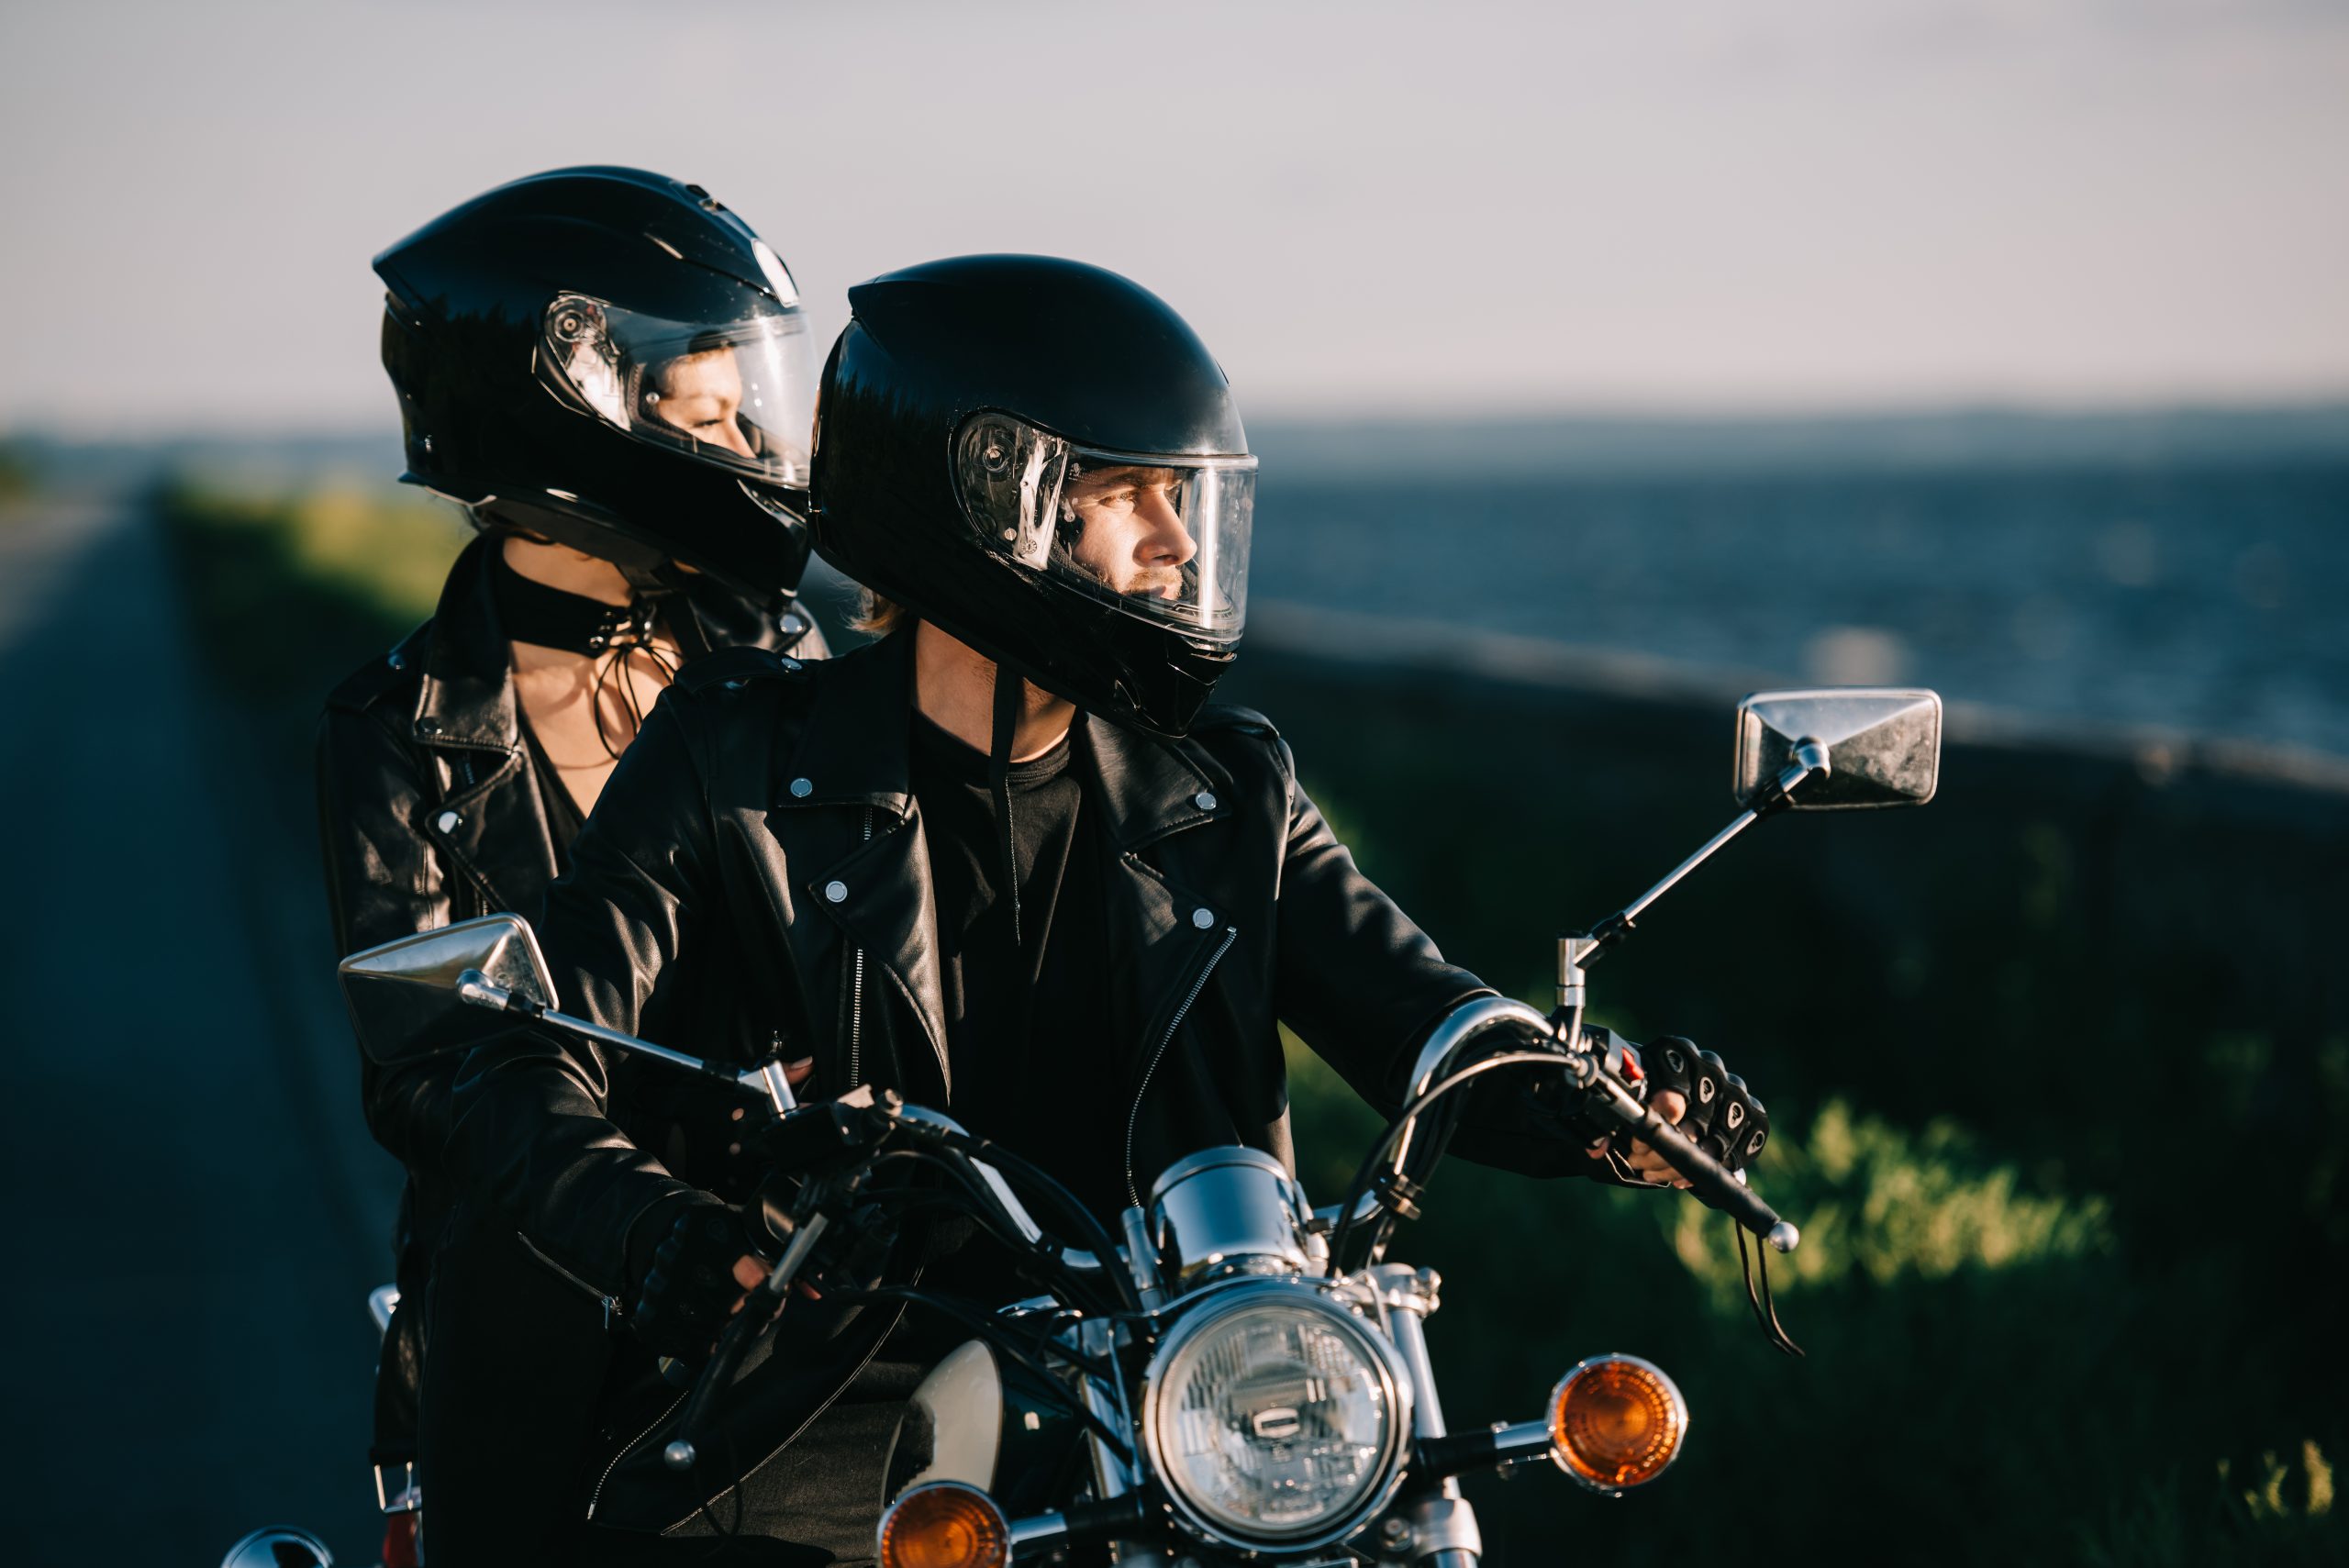 Consórcio de moto: Como conquistar a sua moto sem pagar juros?